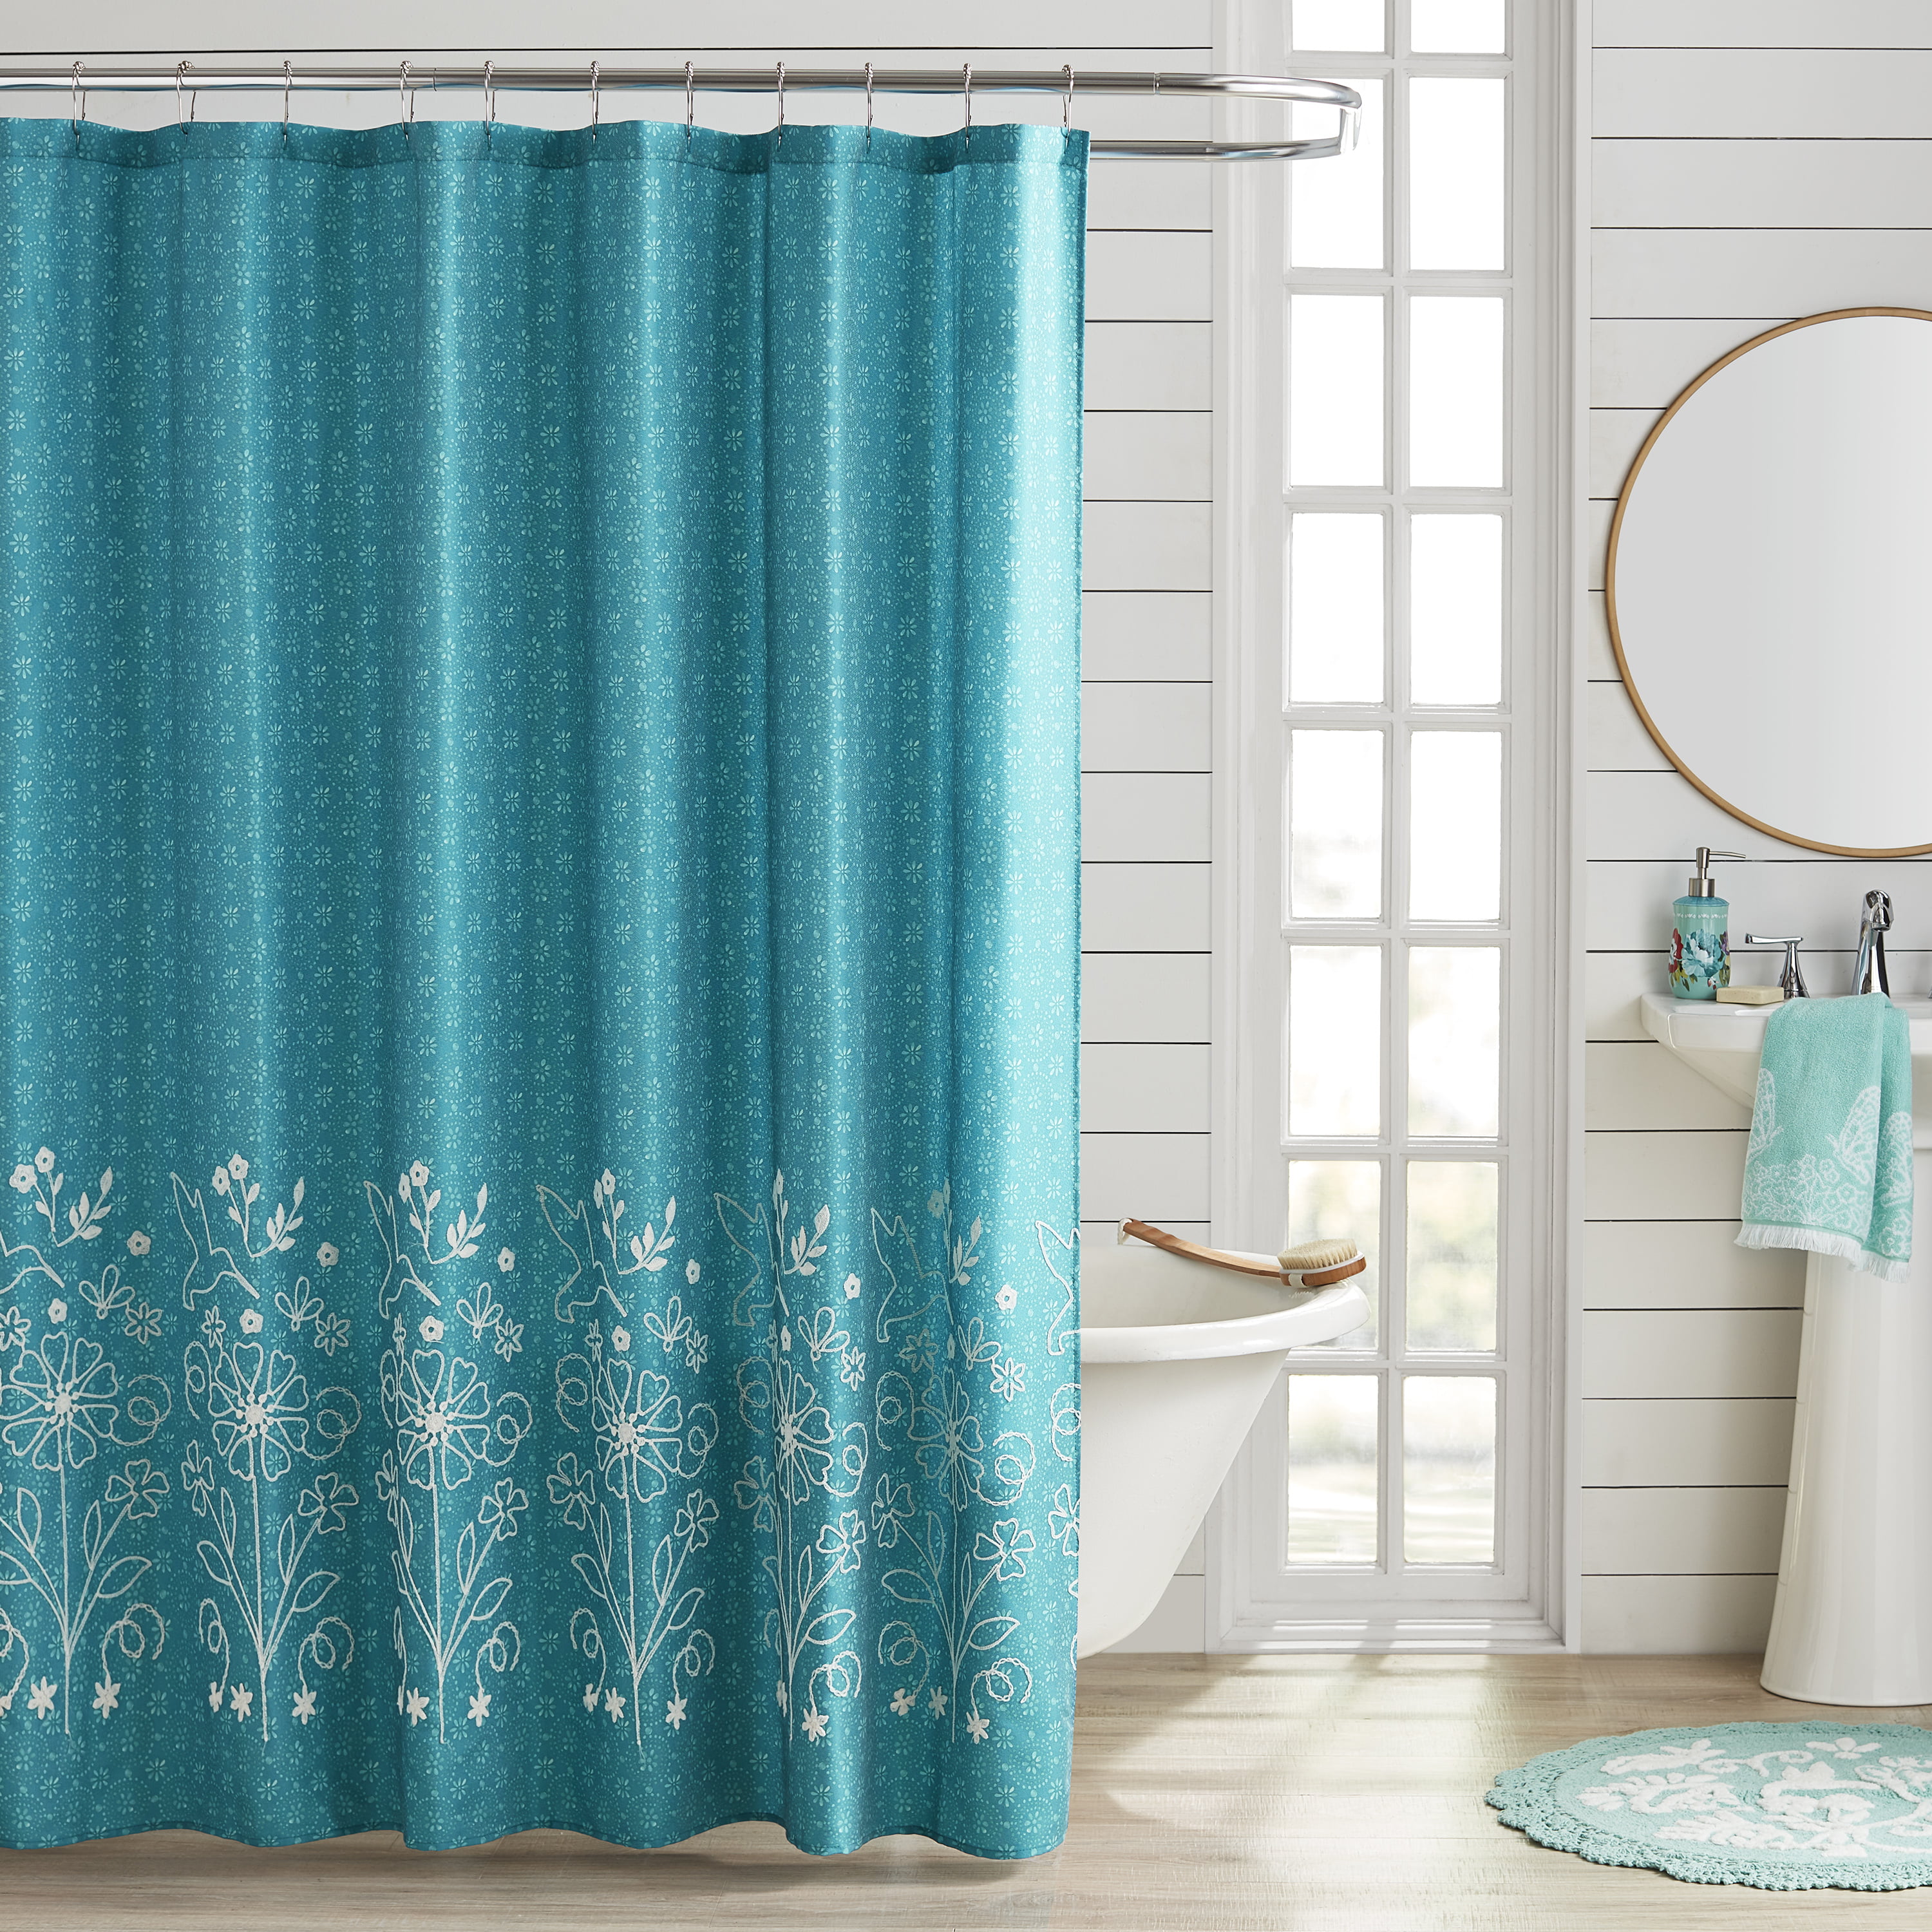 Blue Flower Waterproof Bathroom Polyester Shower Curtain Liner Water Resistant 